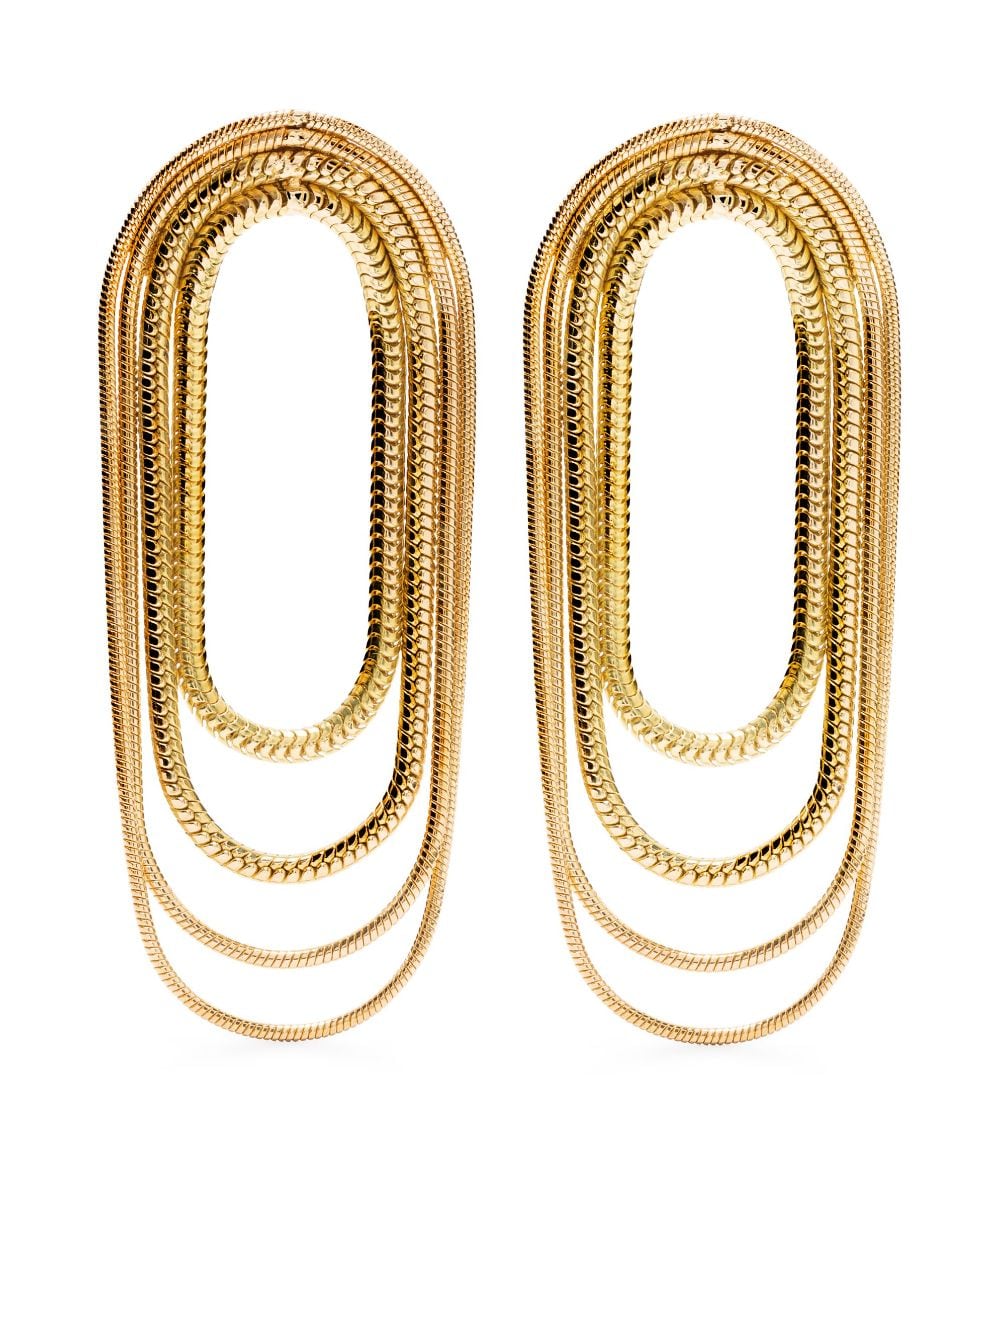 18k yellow gold Multi Chain earrings